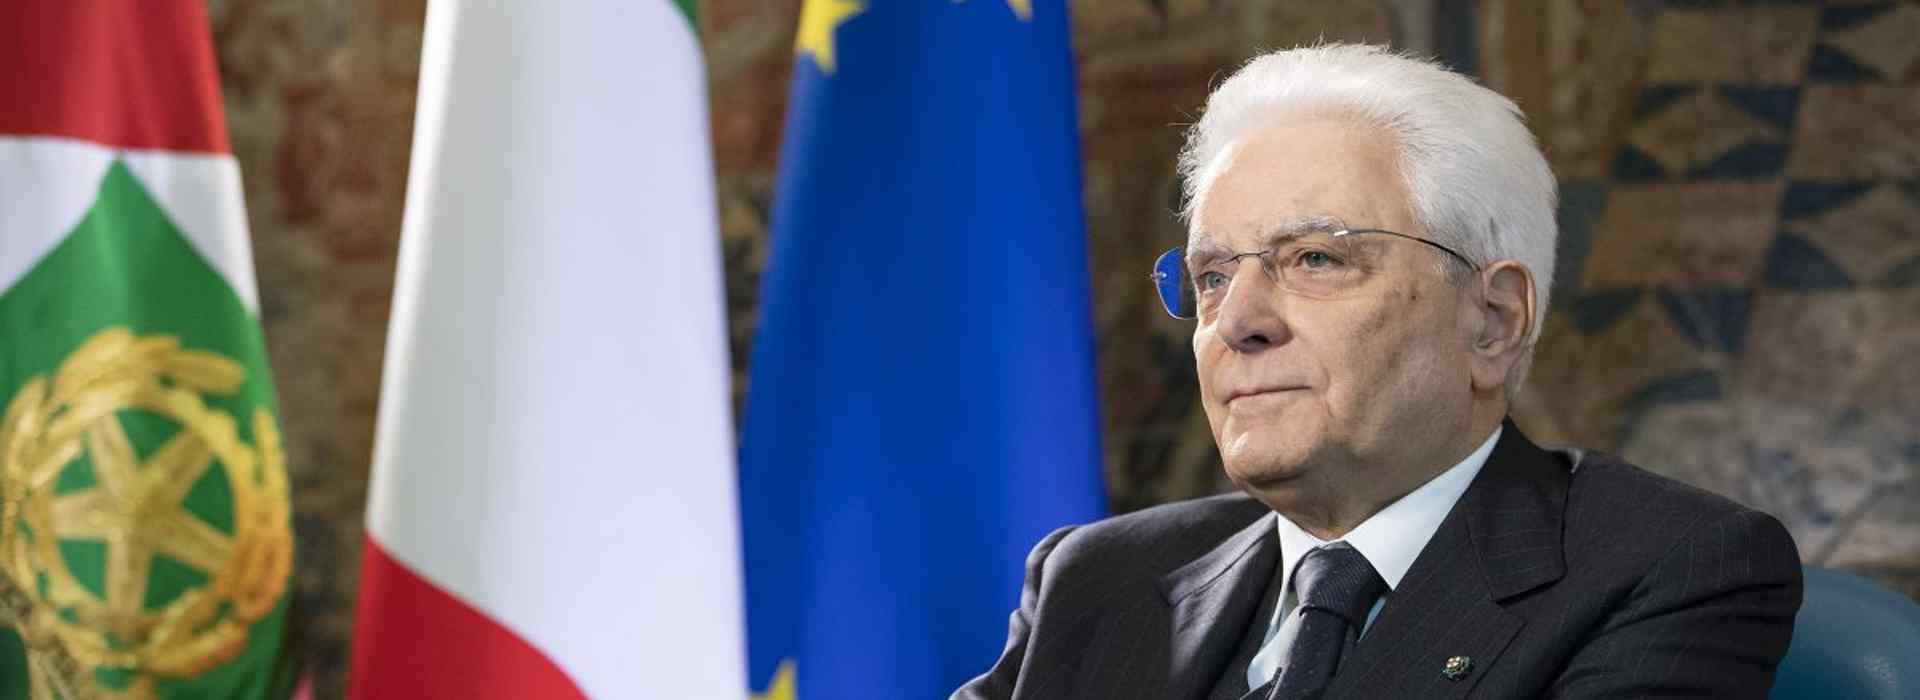 Il presidente della Repubblica Mattarella si taglia lo stipendio. Percepirà la pensione da professore di 179mila euro